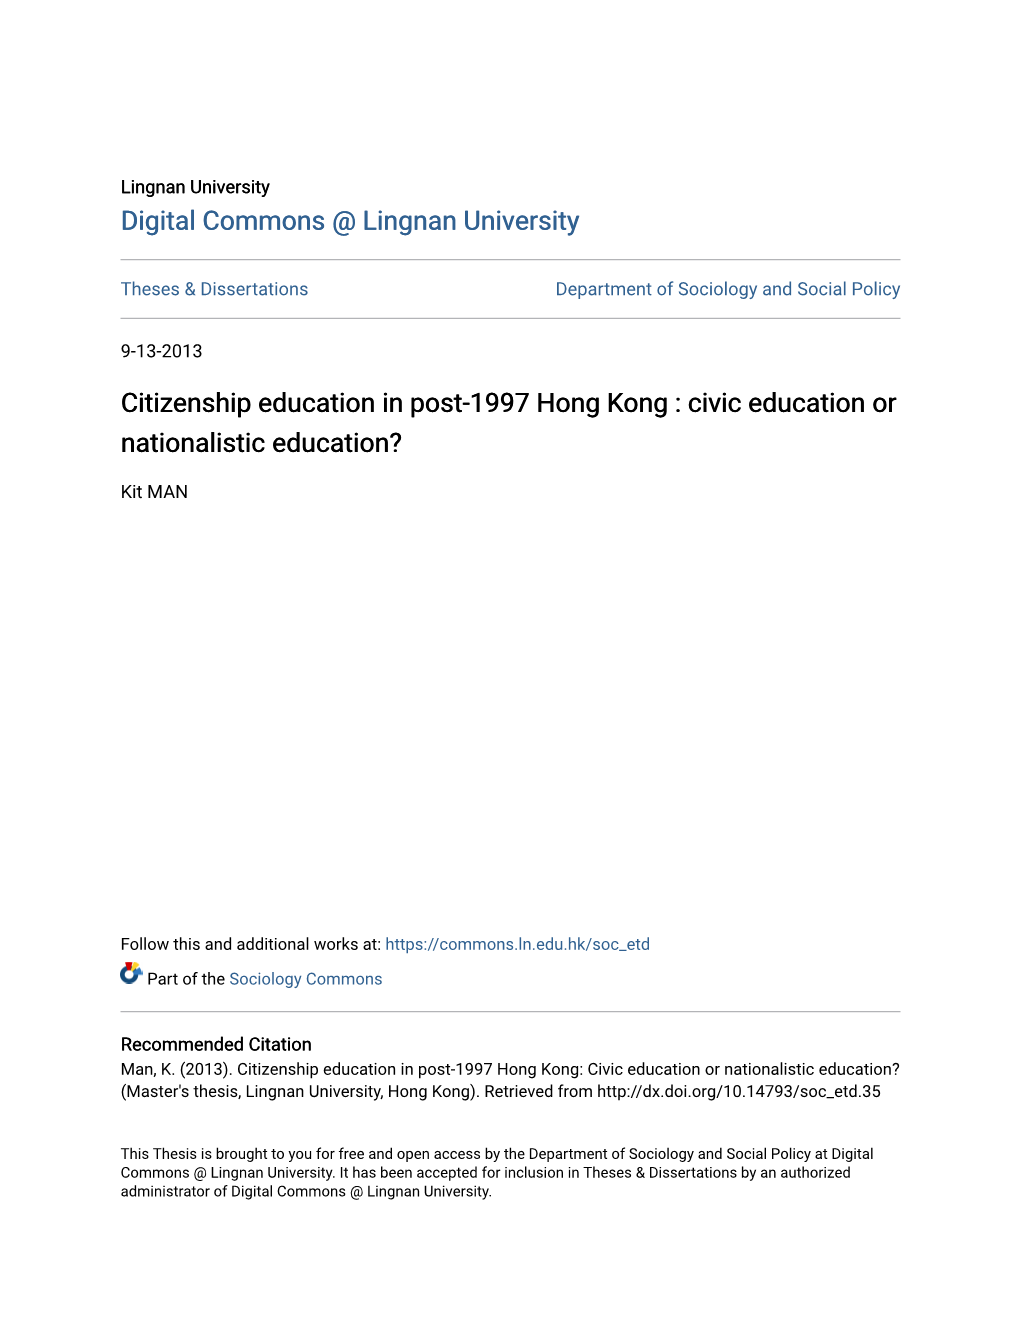 Citizenship Education in Post-1997 Hong Kong : Civic Education Or Nationalistic Education?